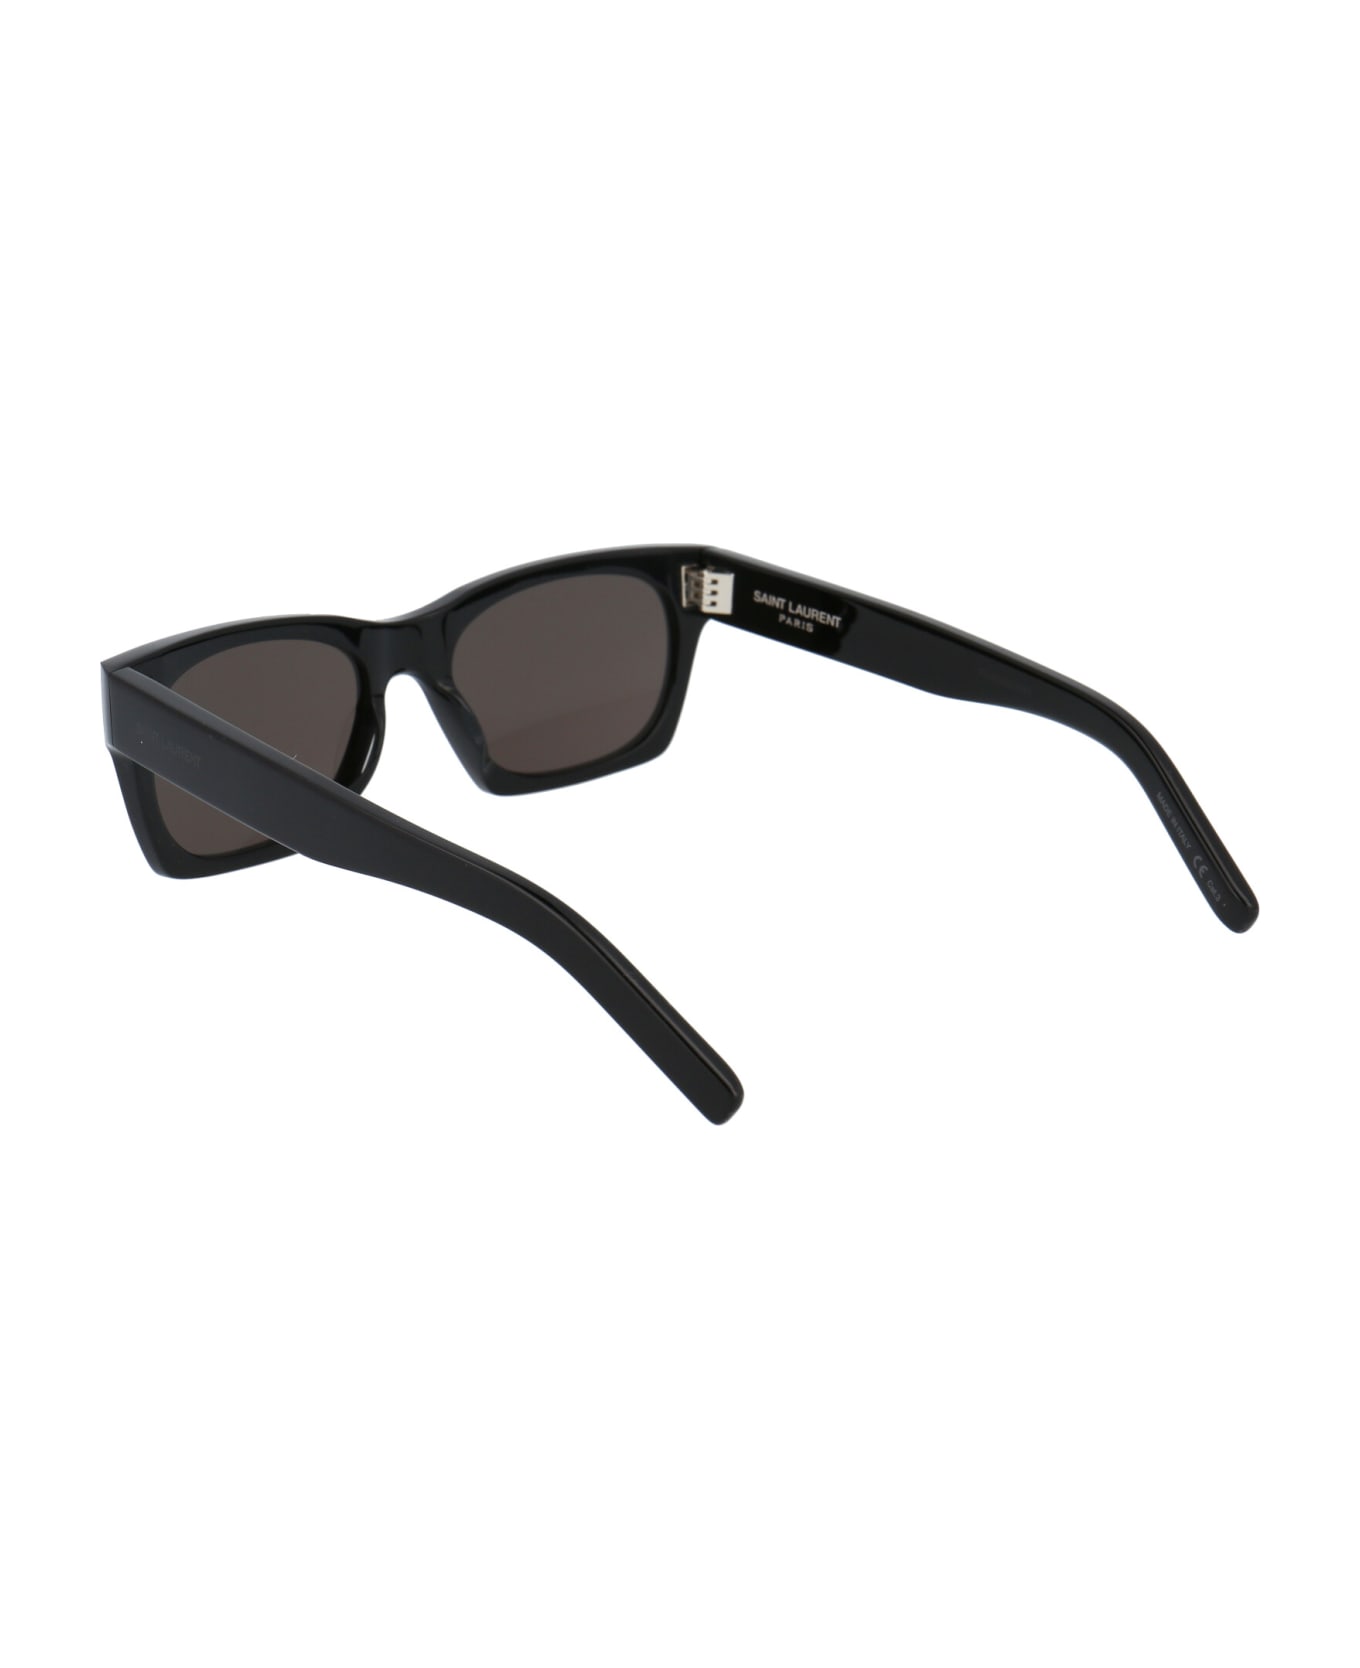 Saint Laurent Eyewear Sl 402 Sunglasses - 001 BLACK BLACK BLACK